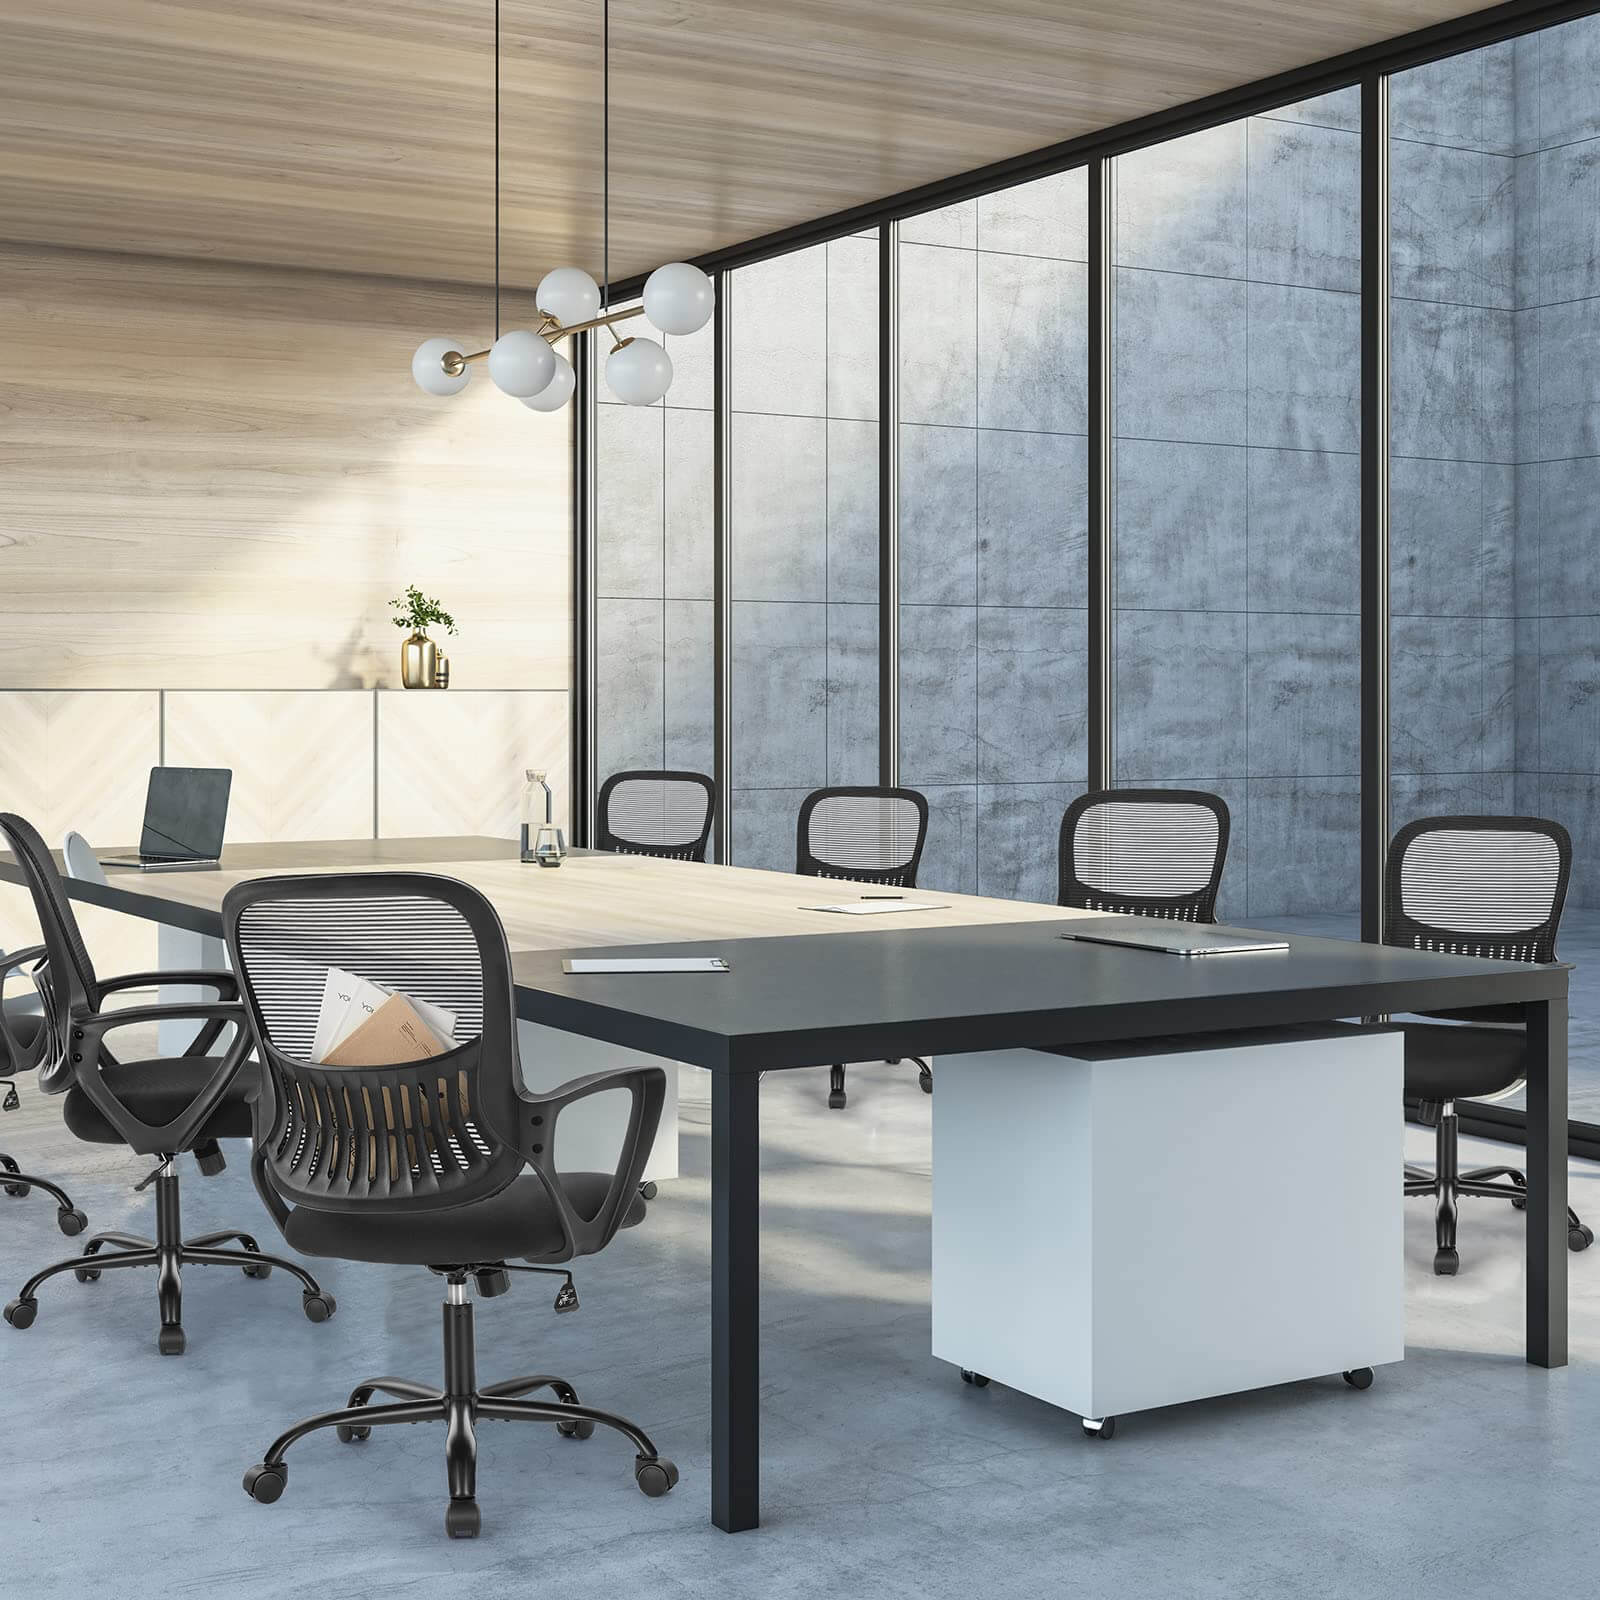 office-chair-ergonomic#Quantity_4 Chair#Color_Black